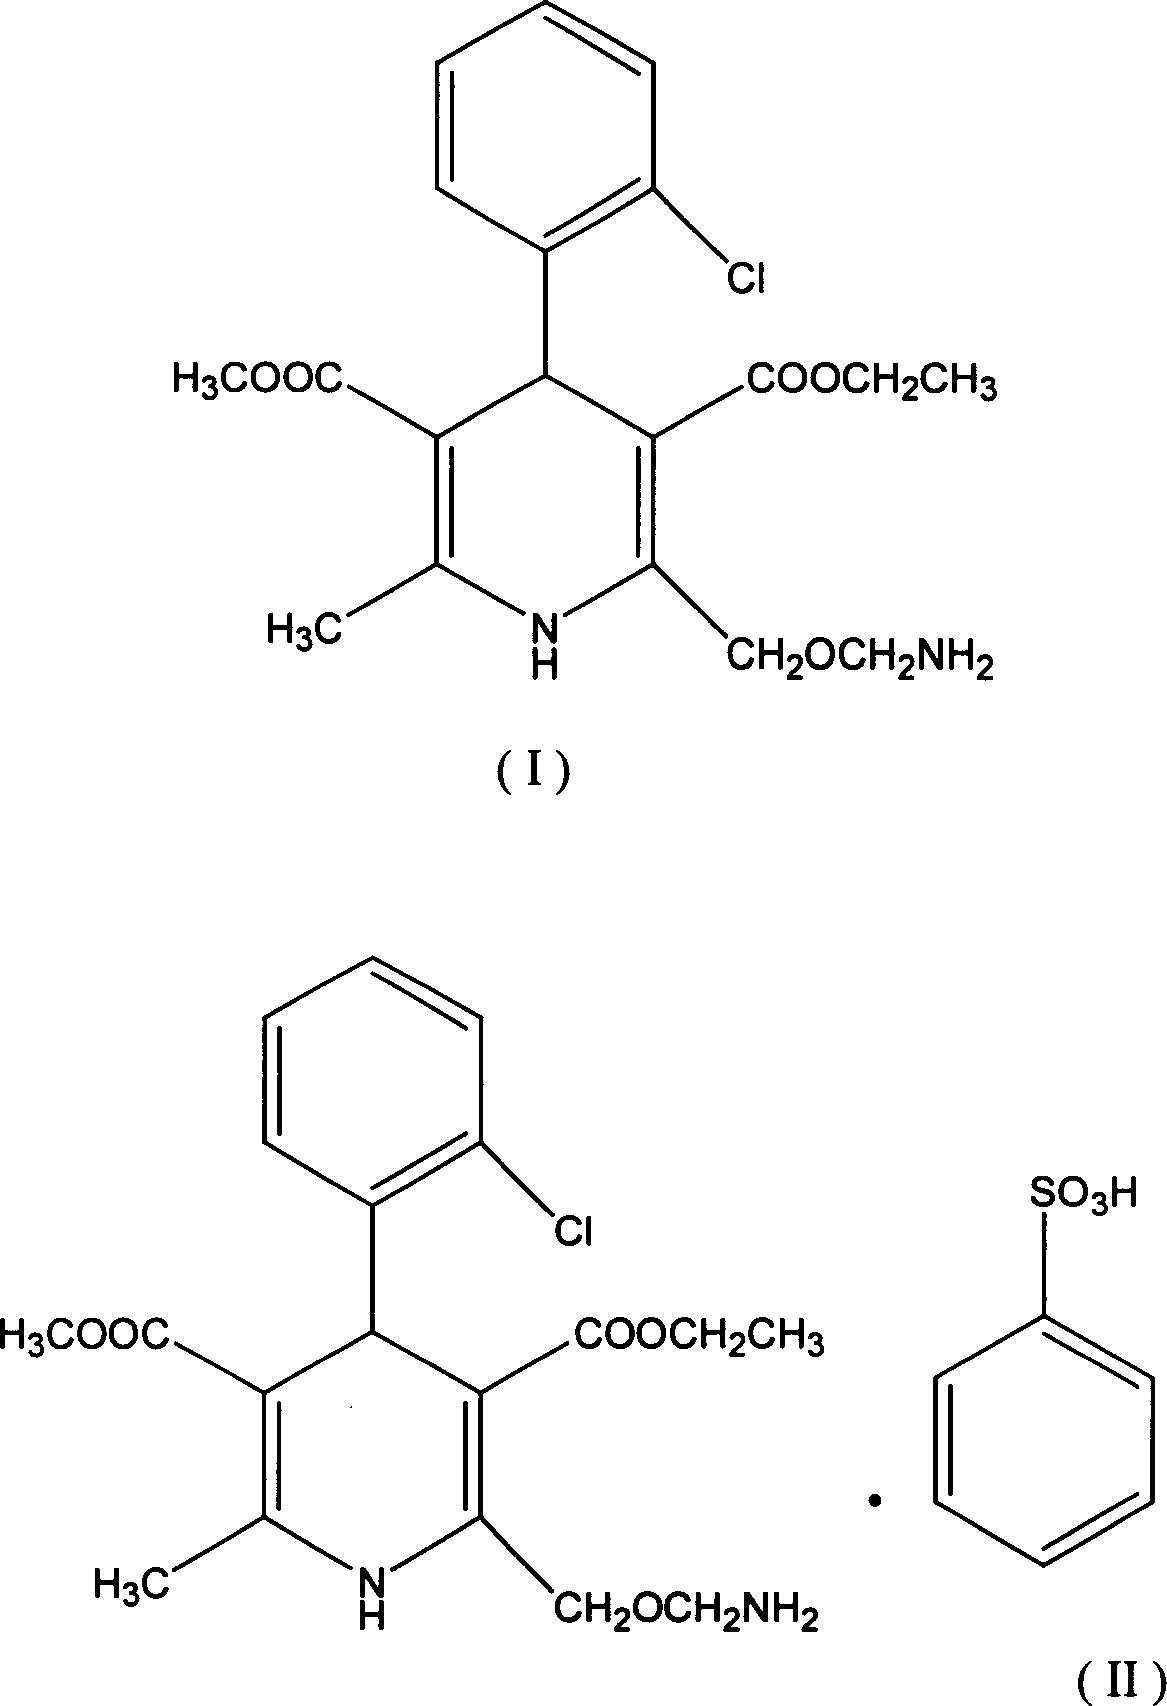 Method for preparing amlodipine benzenesulfonate